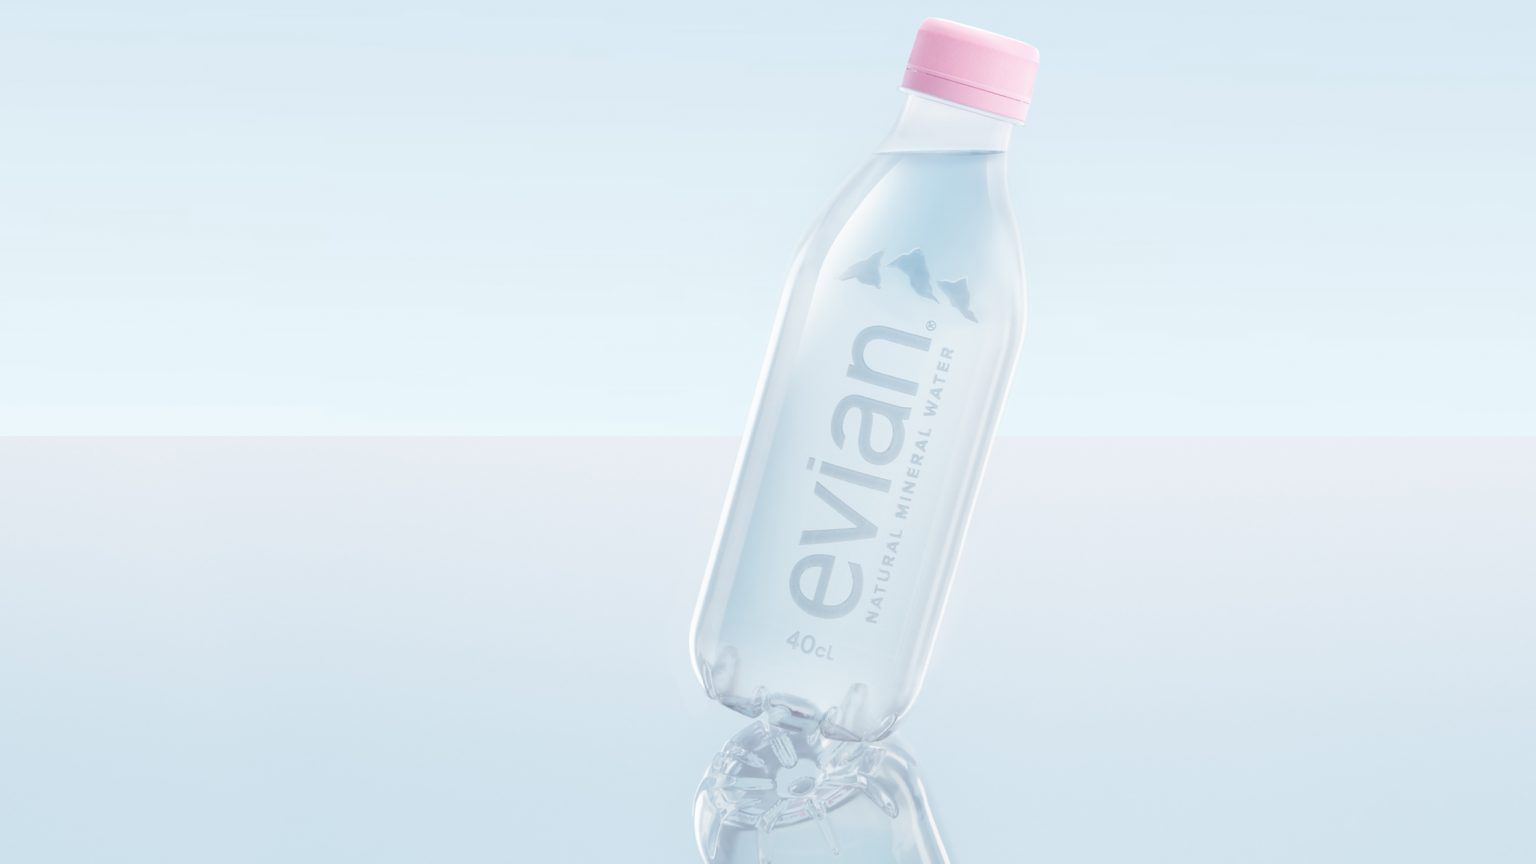 Címkementes palackkal jelentkezik az Evian